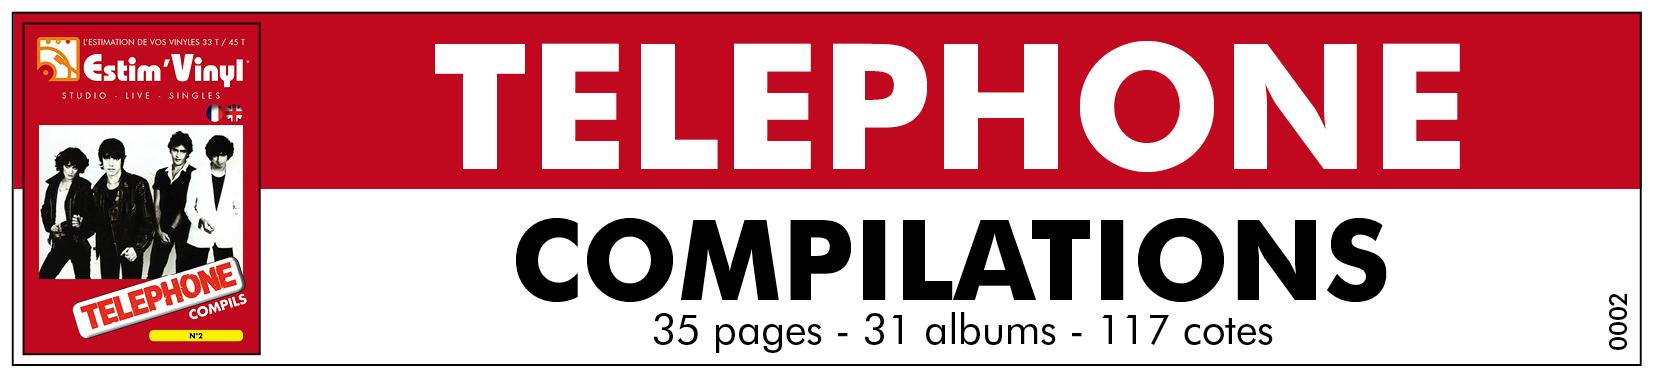 Retrouvez la cote des vinyles compilations 33 tours du Groupe Téléphone